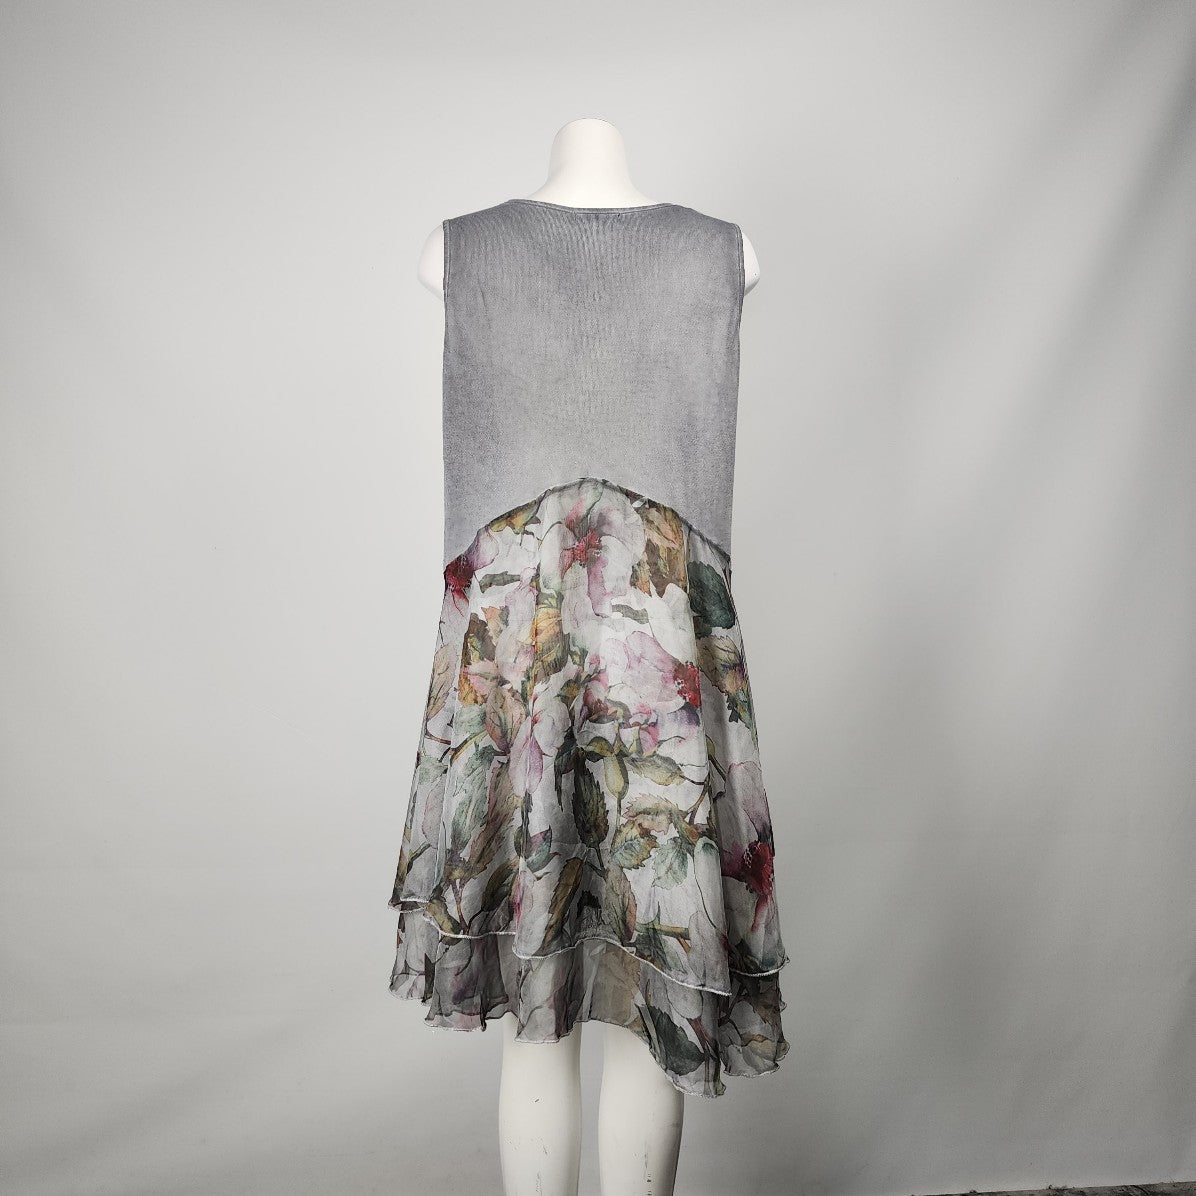 Papa Grey Knit Floral Ruffle Layered Dress Size L